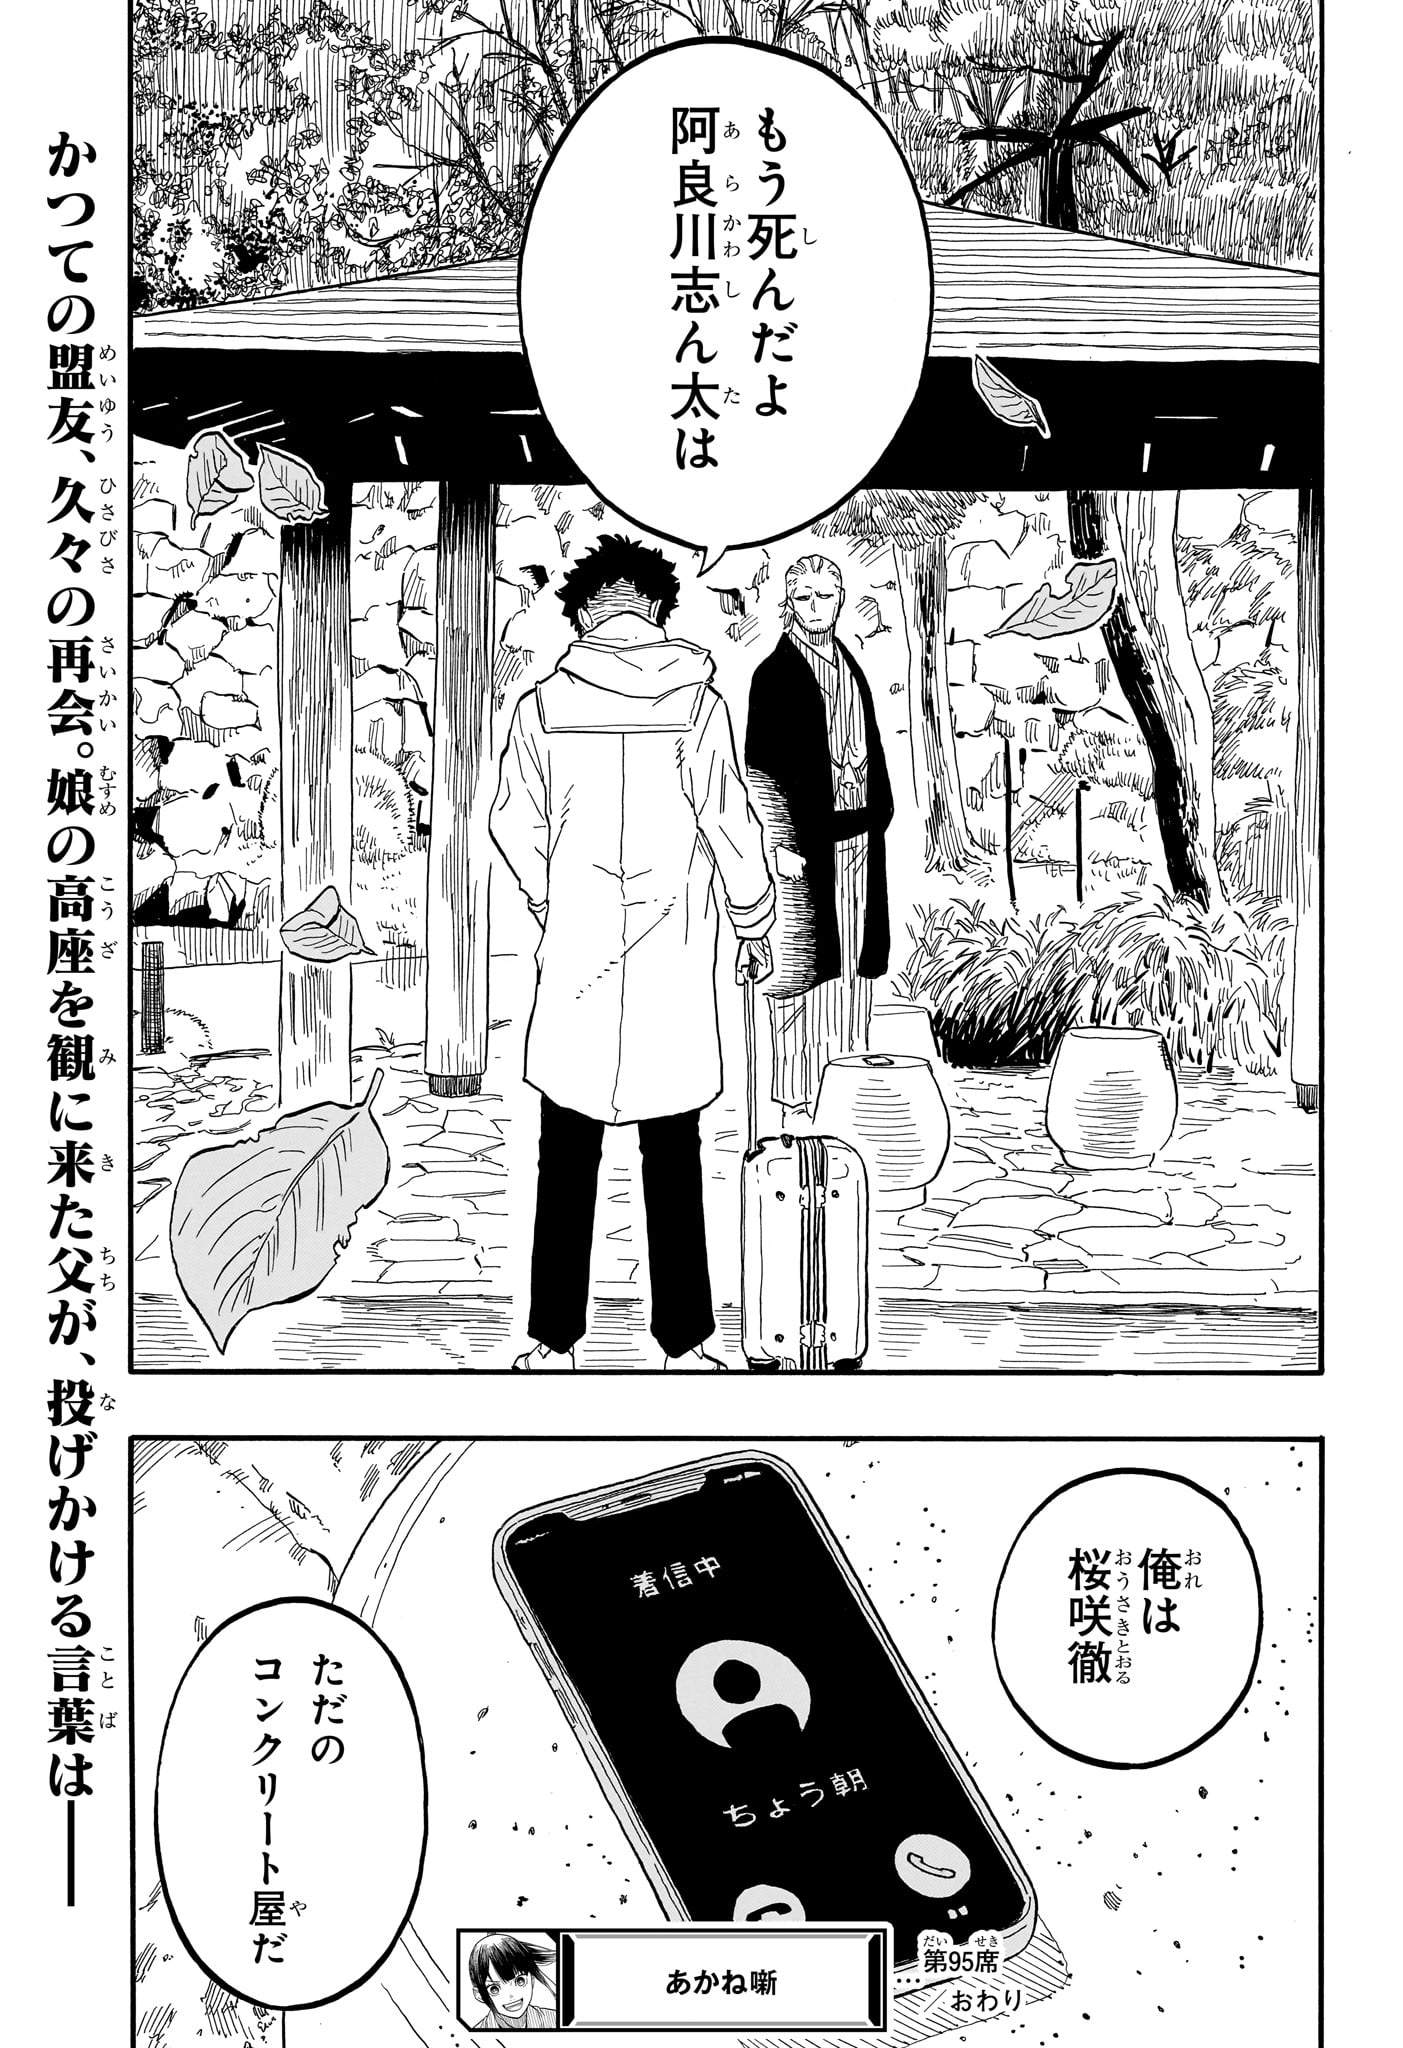 Akane-Banashi - Chapter 95 - Page 19